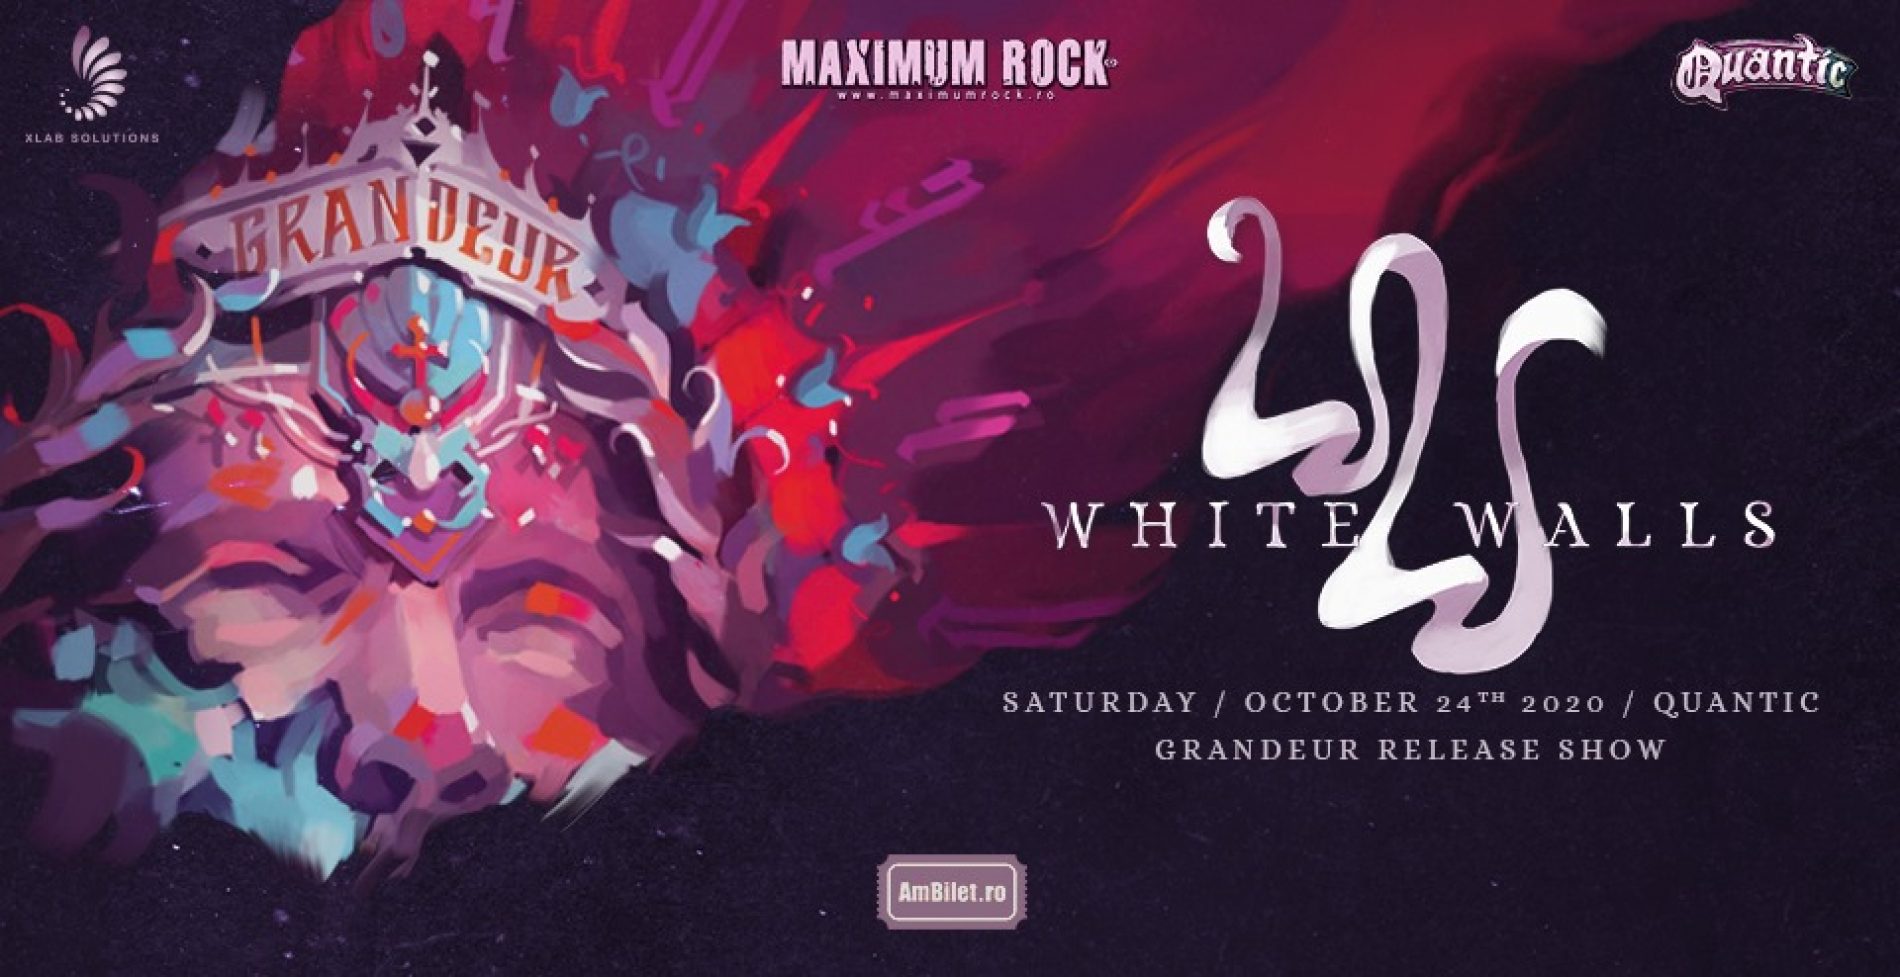 Concertul White Walls din București este aproape sold out